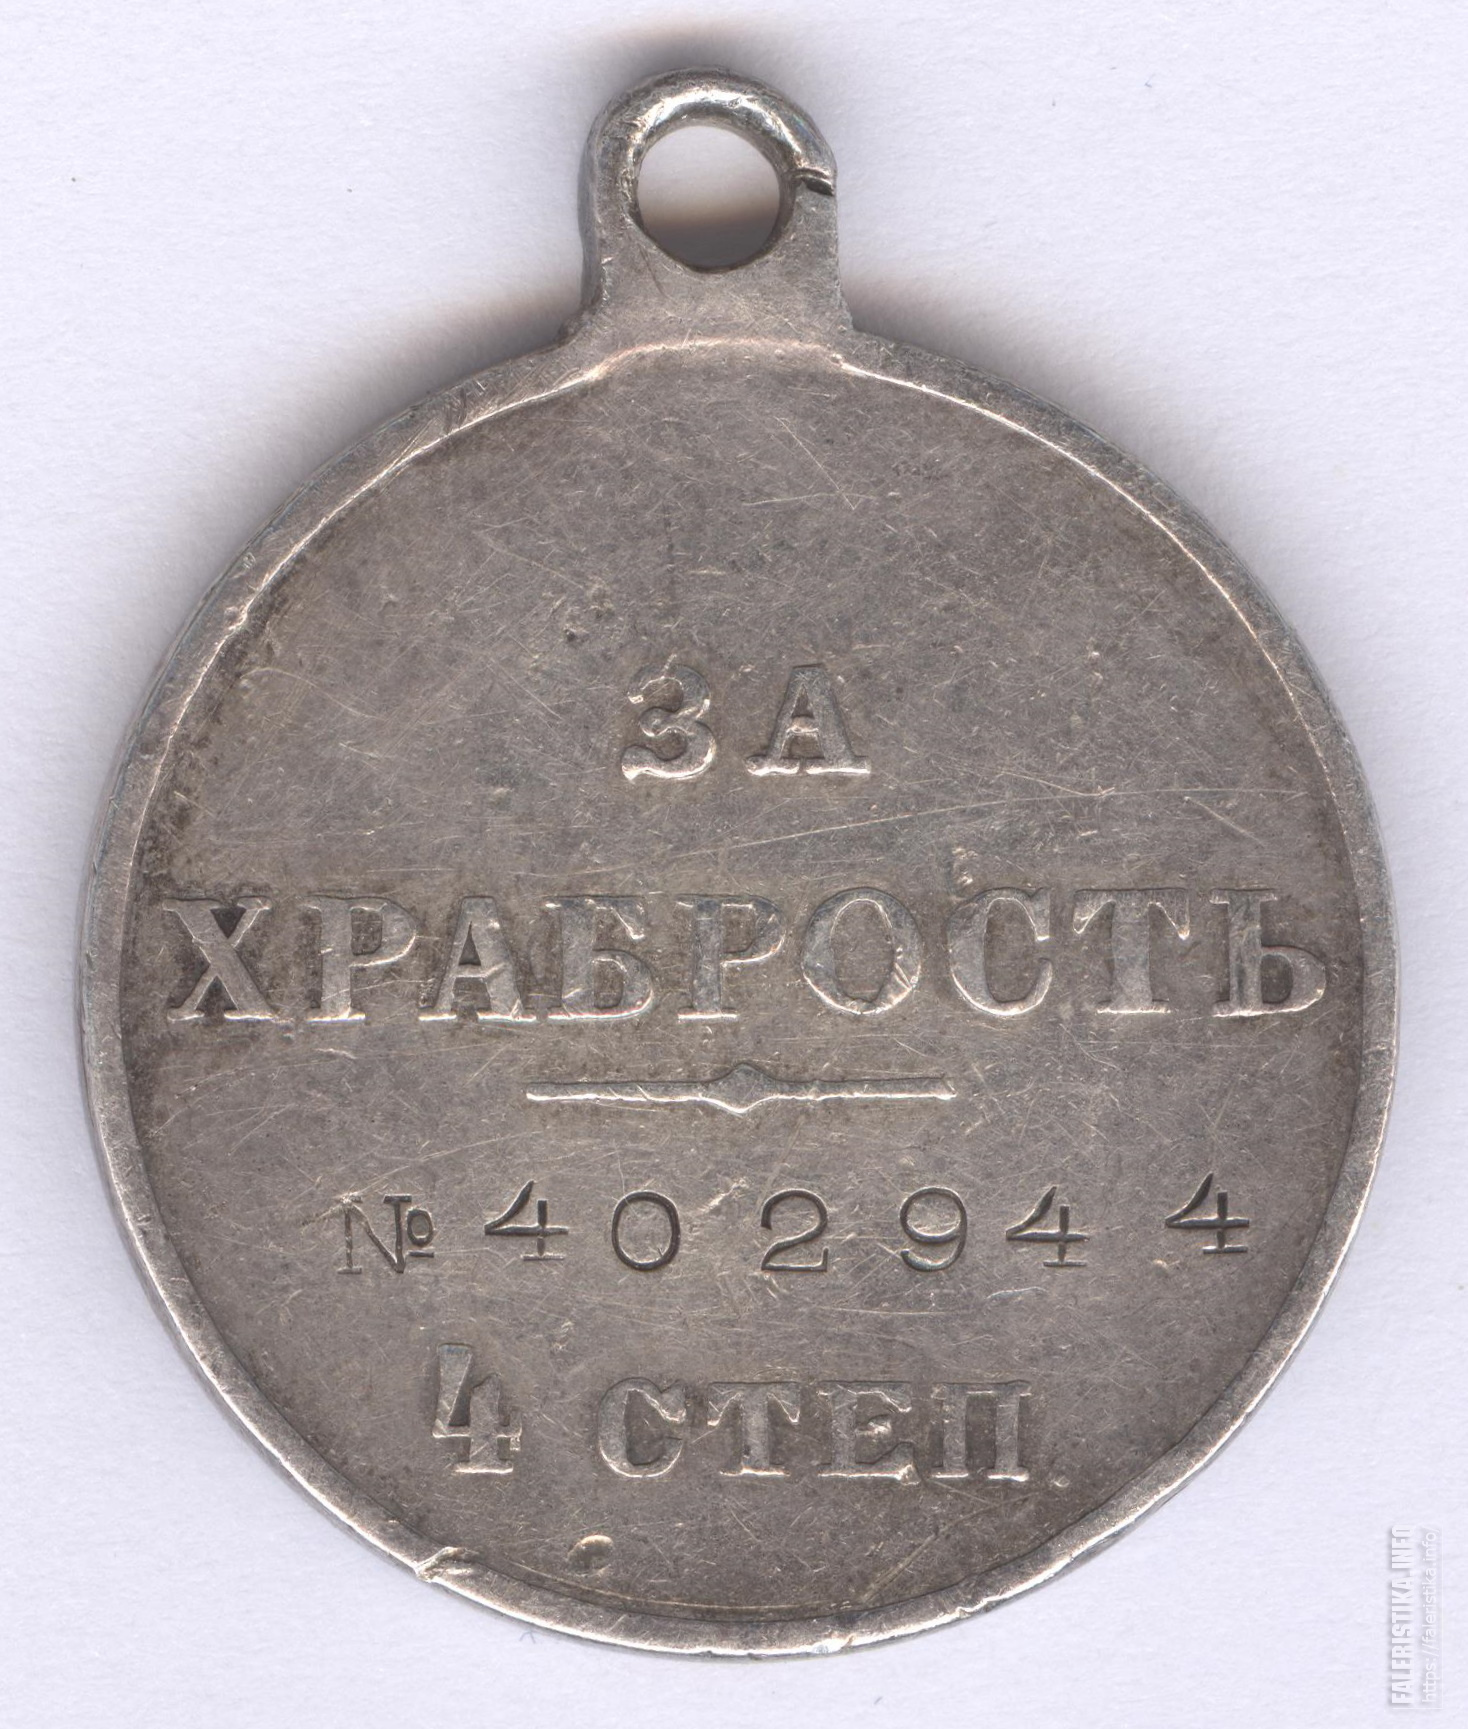 296-Й пехотный Грязовецкий полк